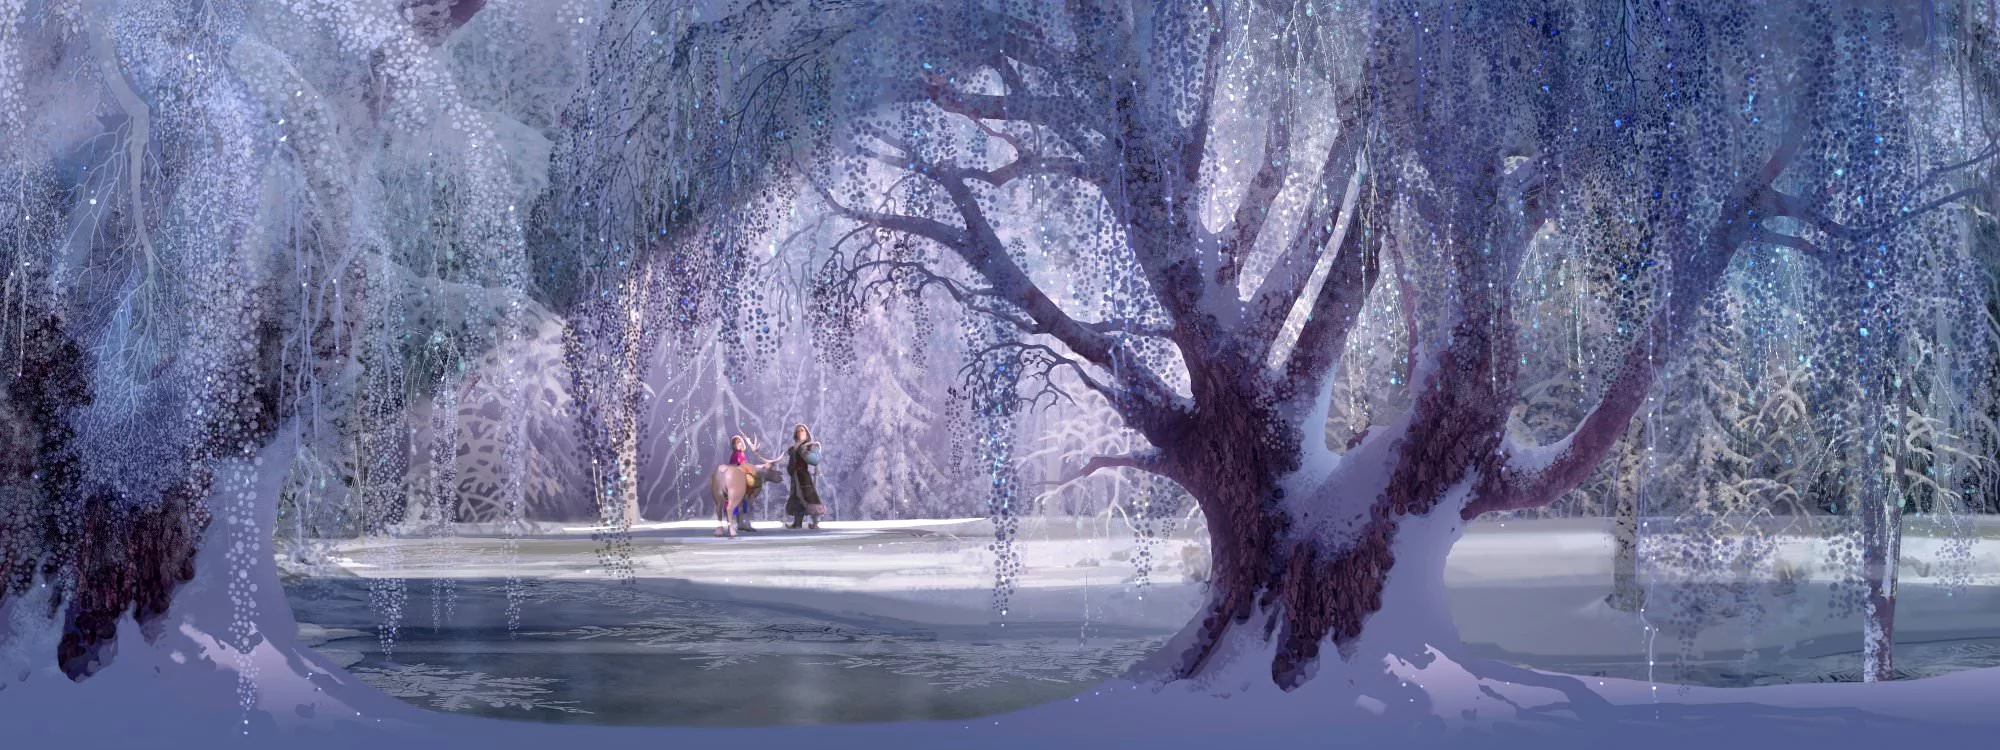 Welch wunderschöne Landschaft es auch im Winter geben kann. © Walt Disney Home Entertainment